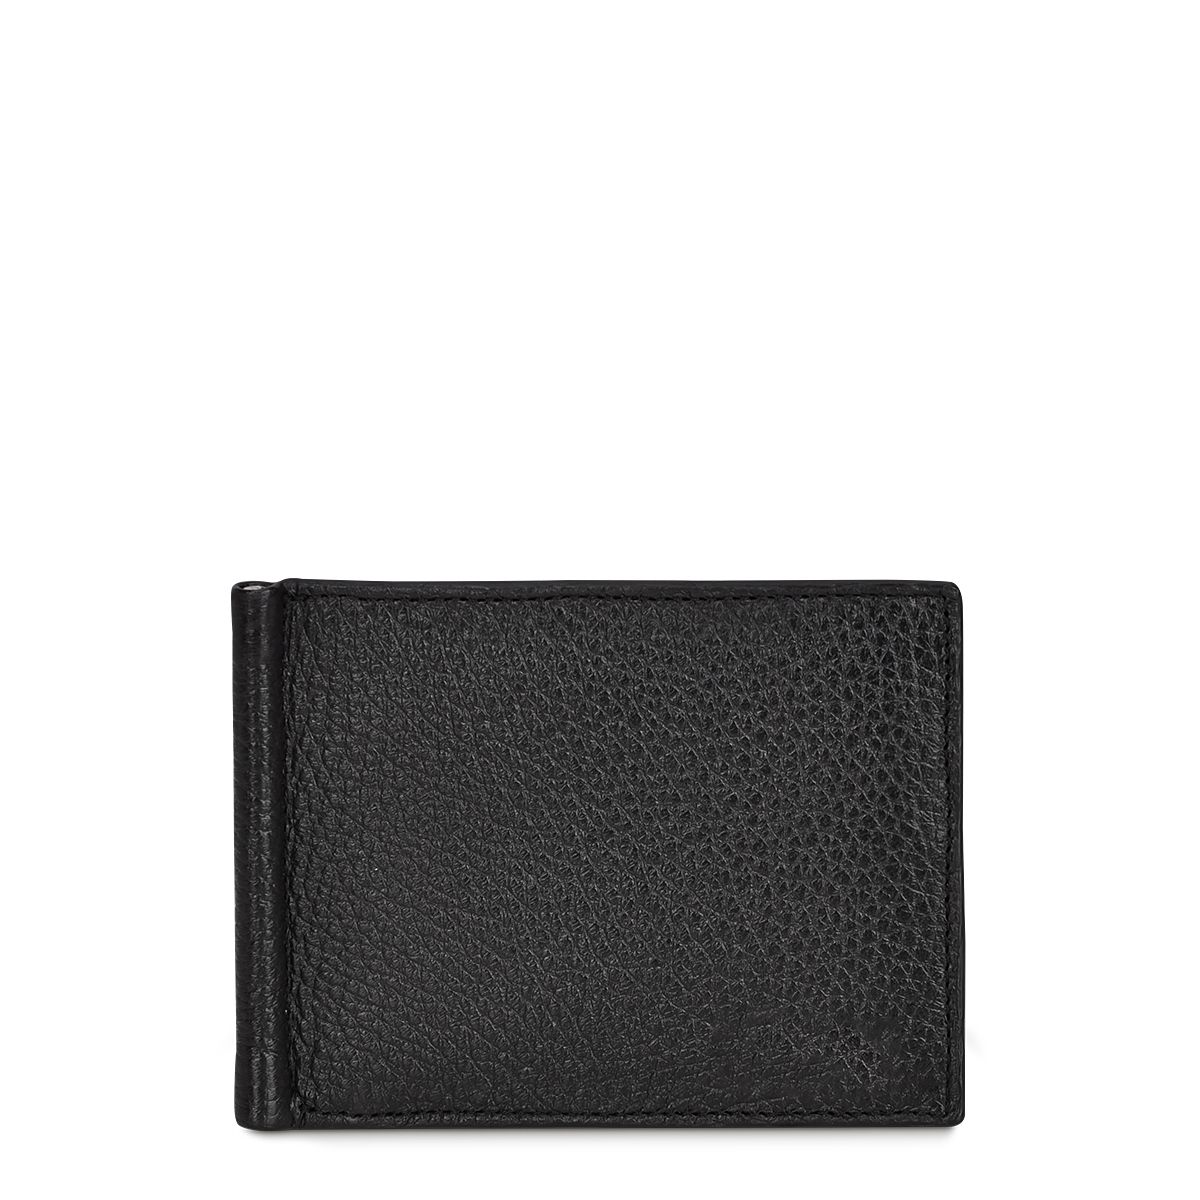 B3042VE - Cuadra black casual fashion deerskin bi fold wallet for men-Kuet.us